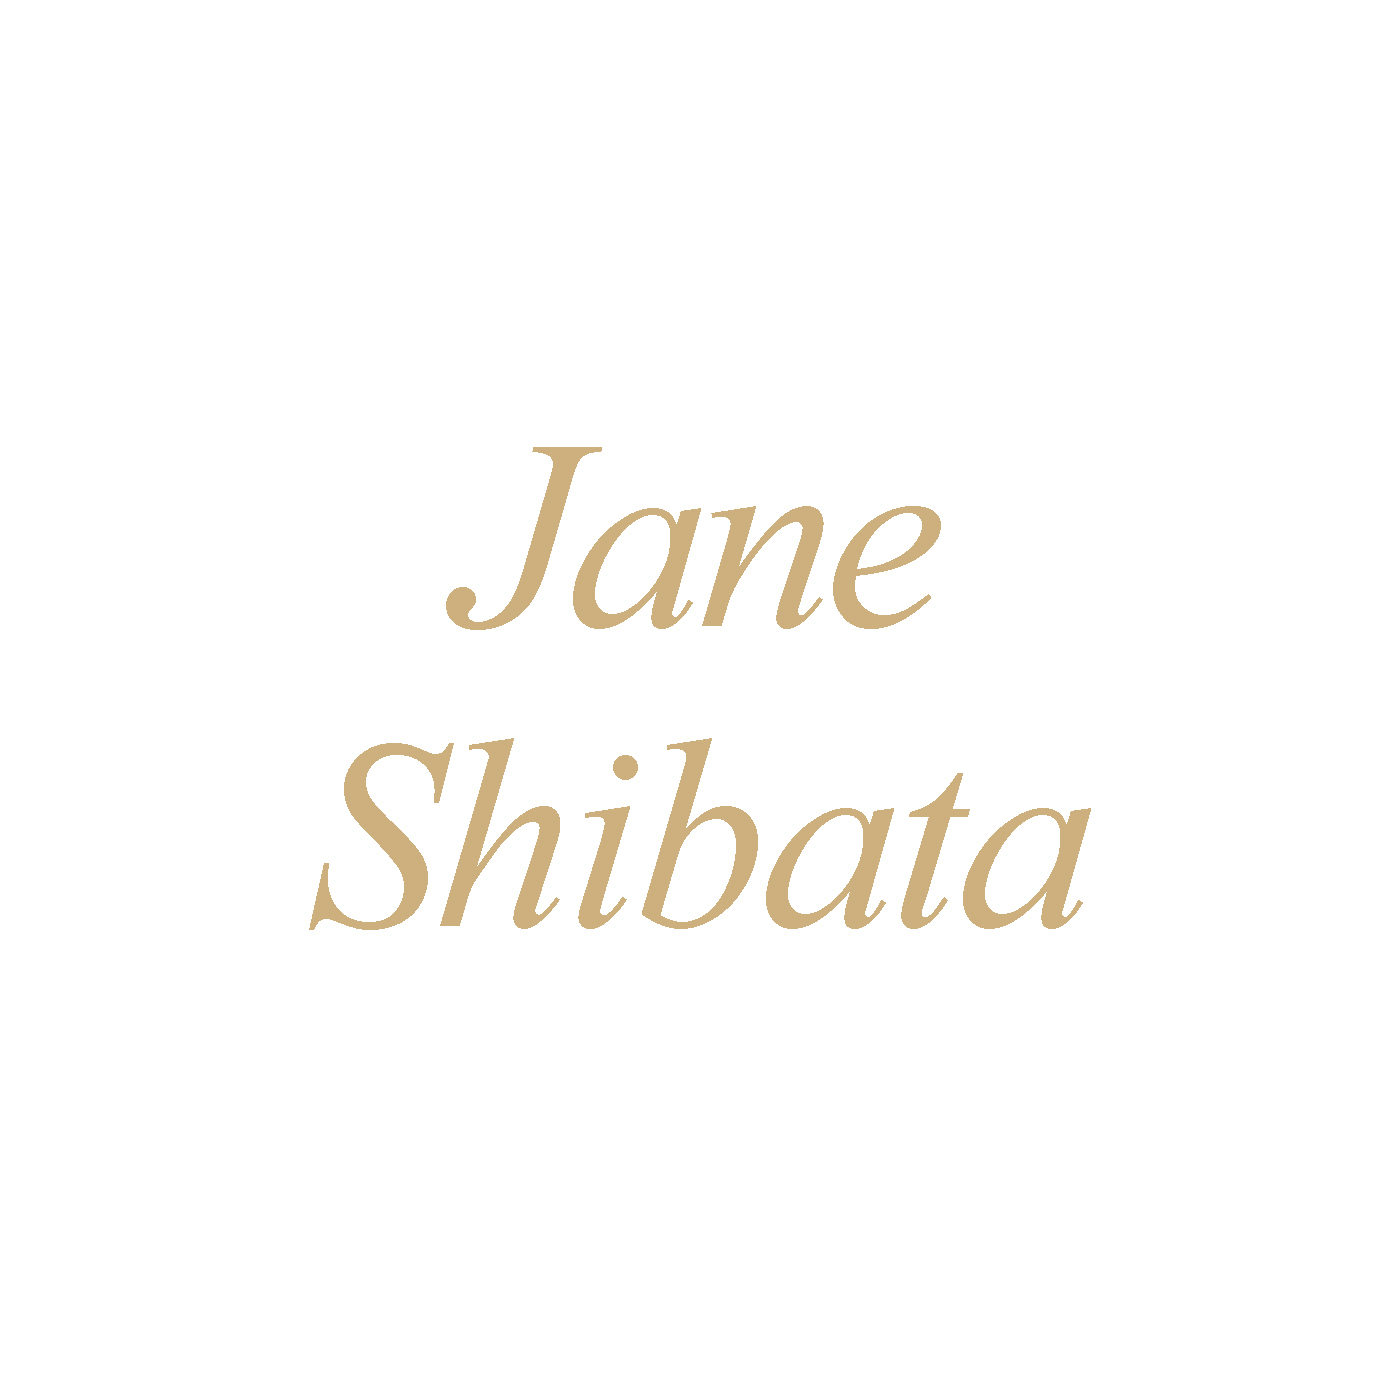 Jane Shibata